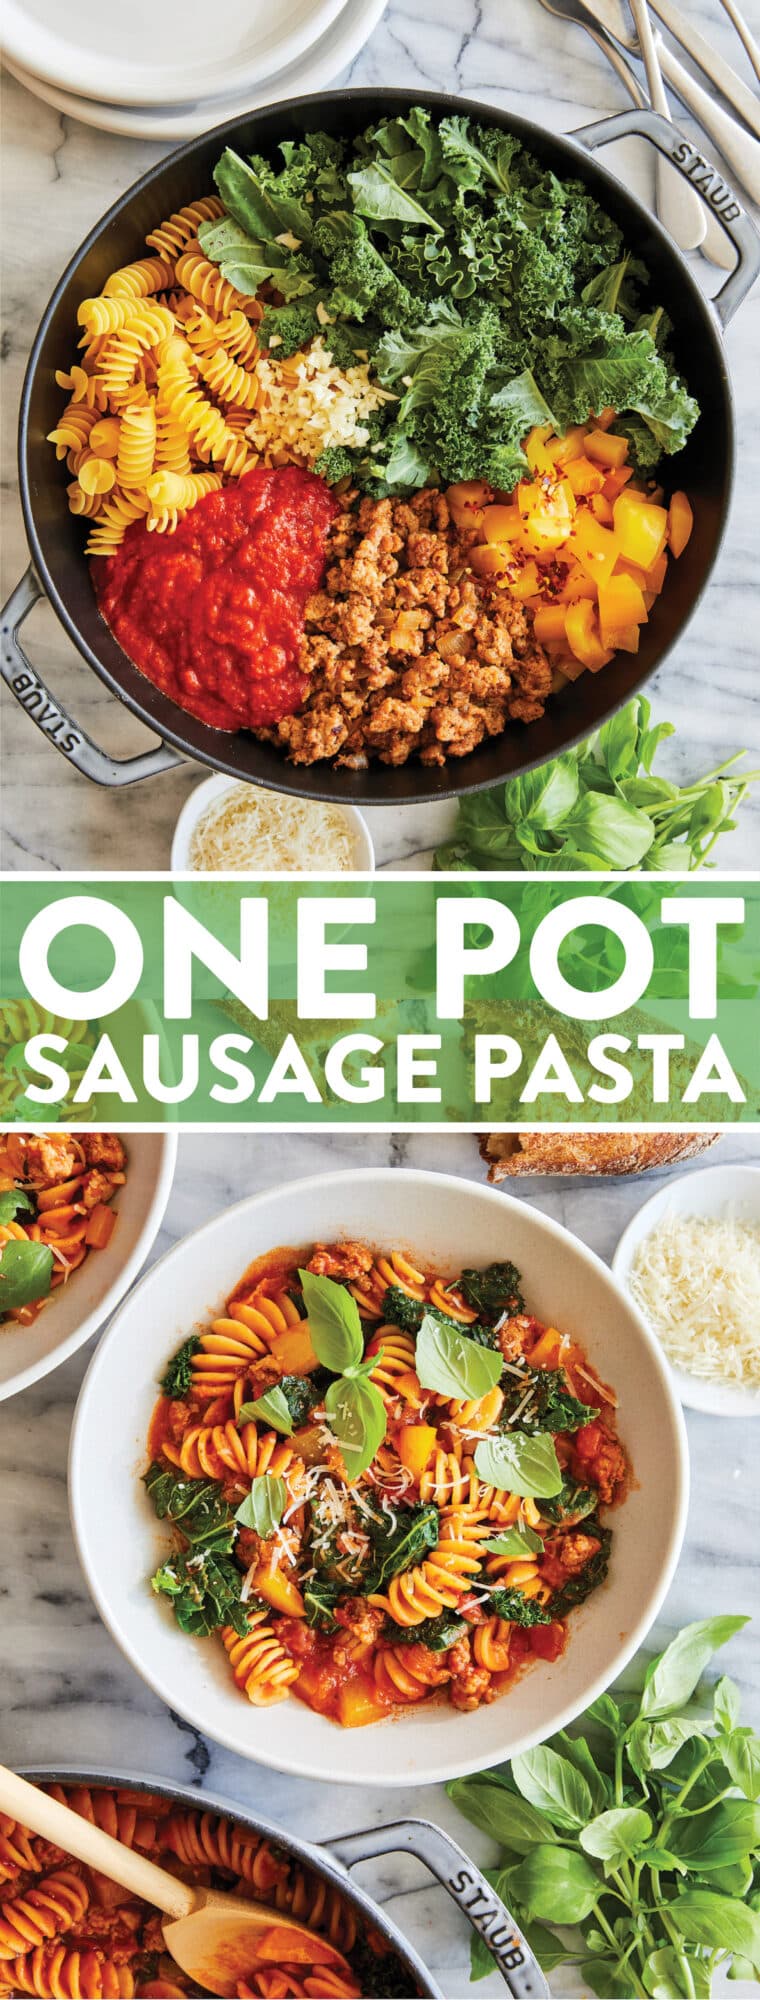 Паста One Pot Sausage Pasta — с раскрошенной итальянской колбасой, приправленной зеленью, соусом маринара и пармезаном.  НАСТОЯЩИЙ УЖИН НА ОДНОЙ СКОВОРОДКЕ!  Так легко!